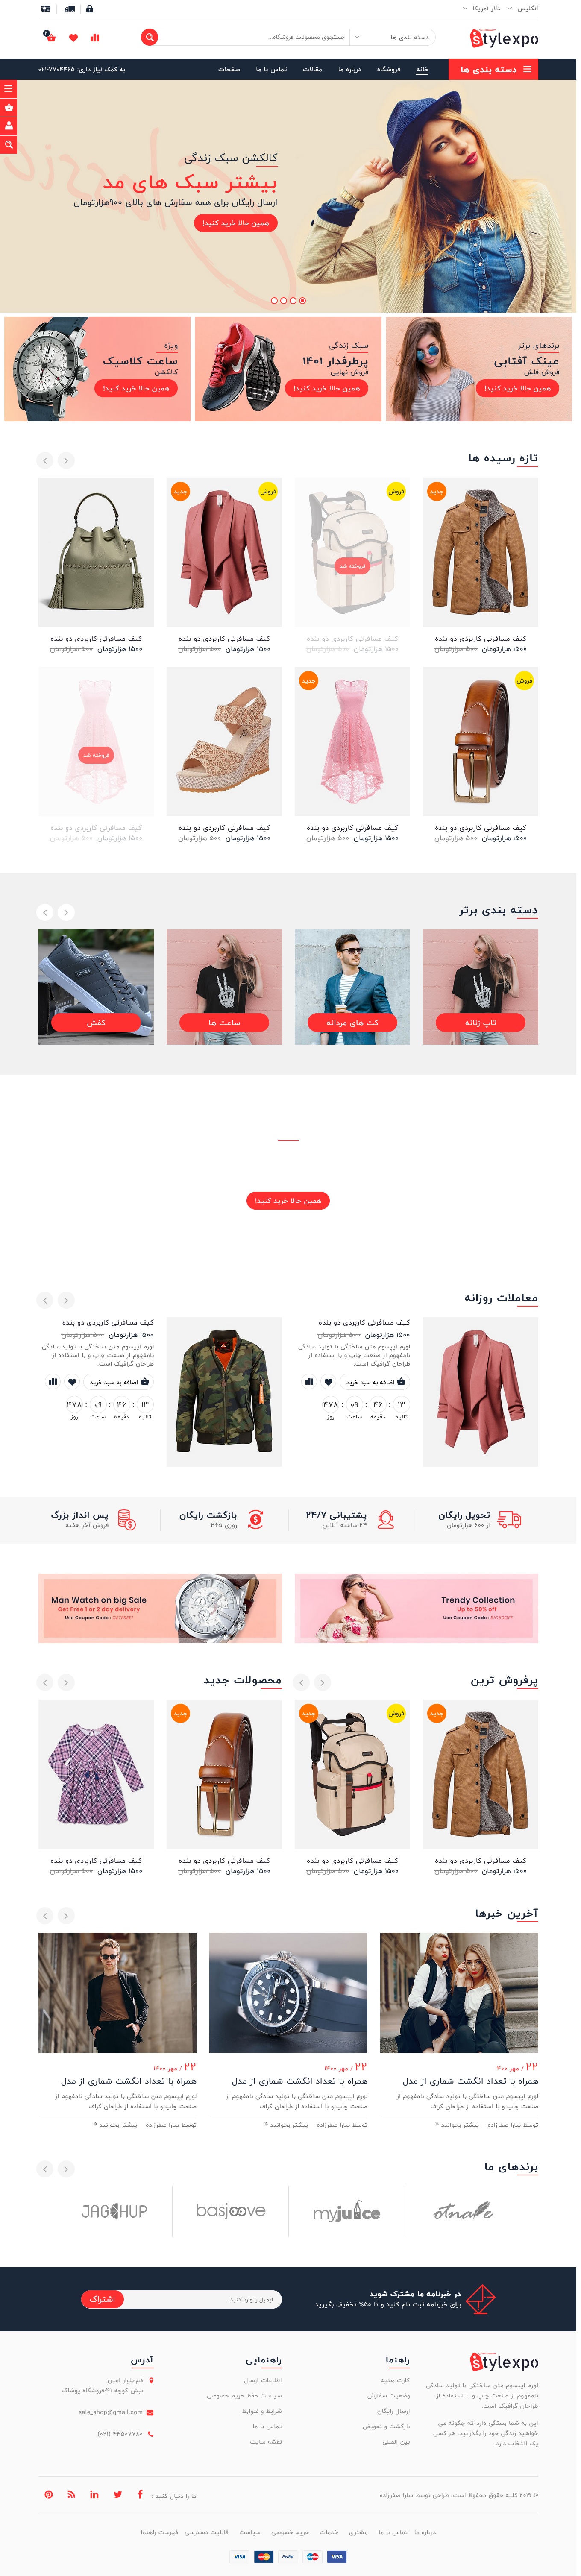 نمایش قالب Stylexpo برای طراحی سایت فروشگاهی